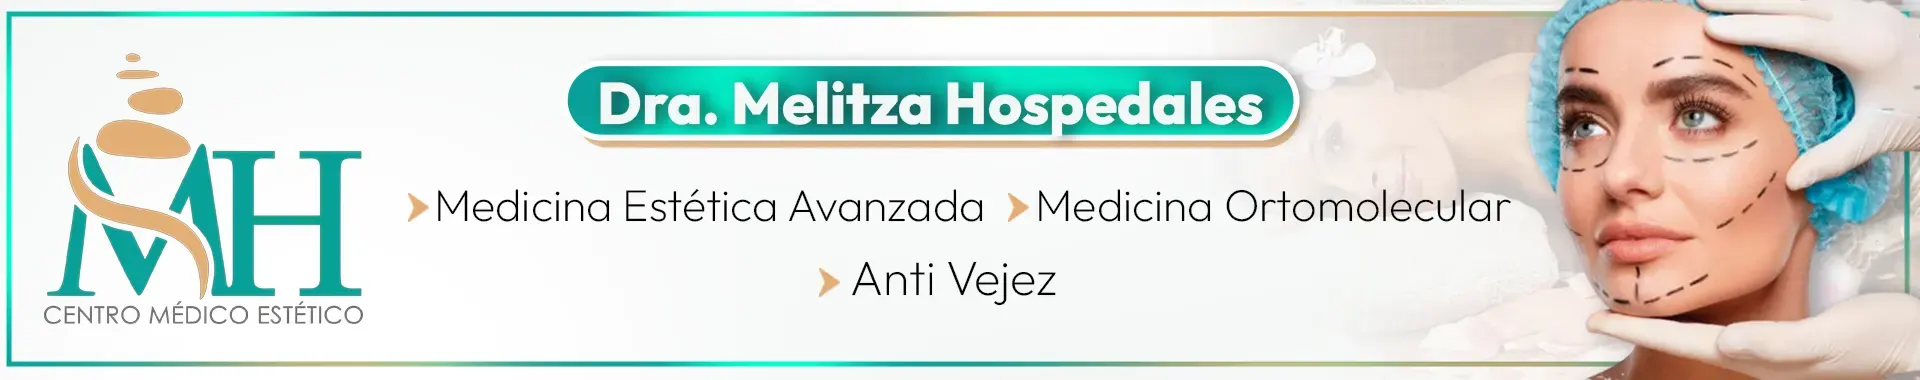 Imagen 1 del perfil de Dra. Melitza Hospedales